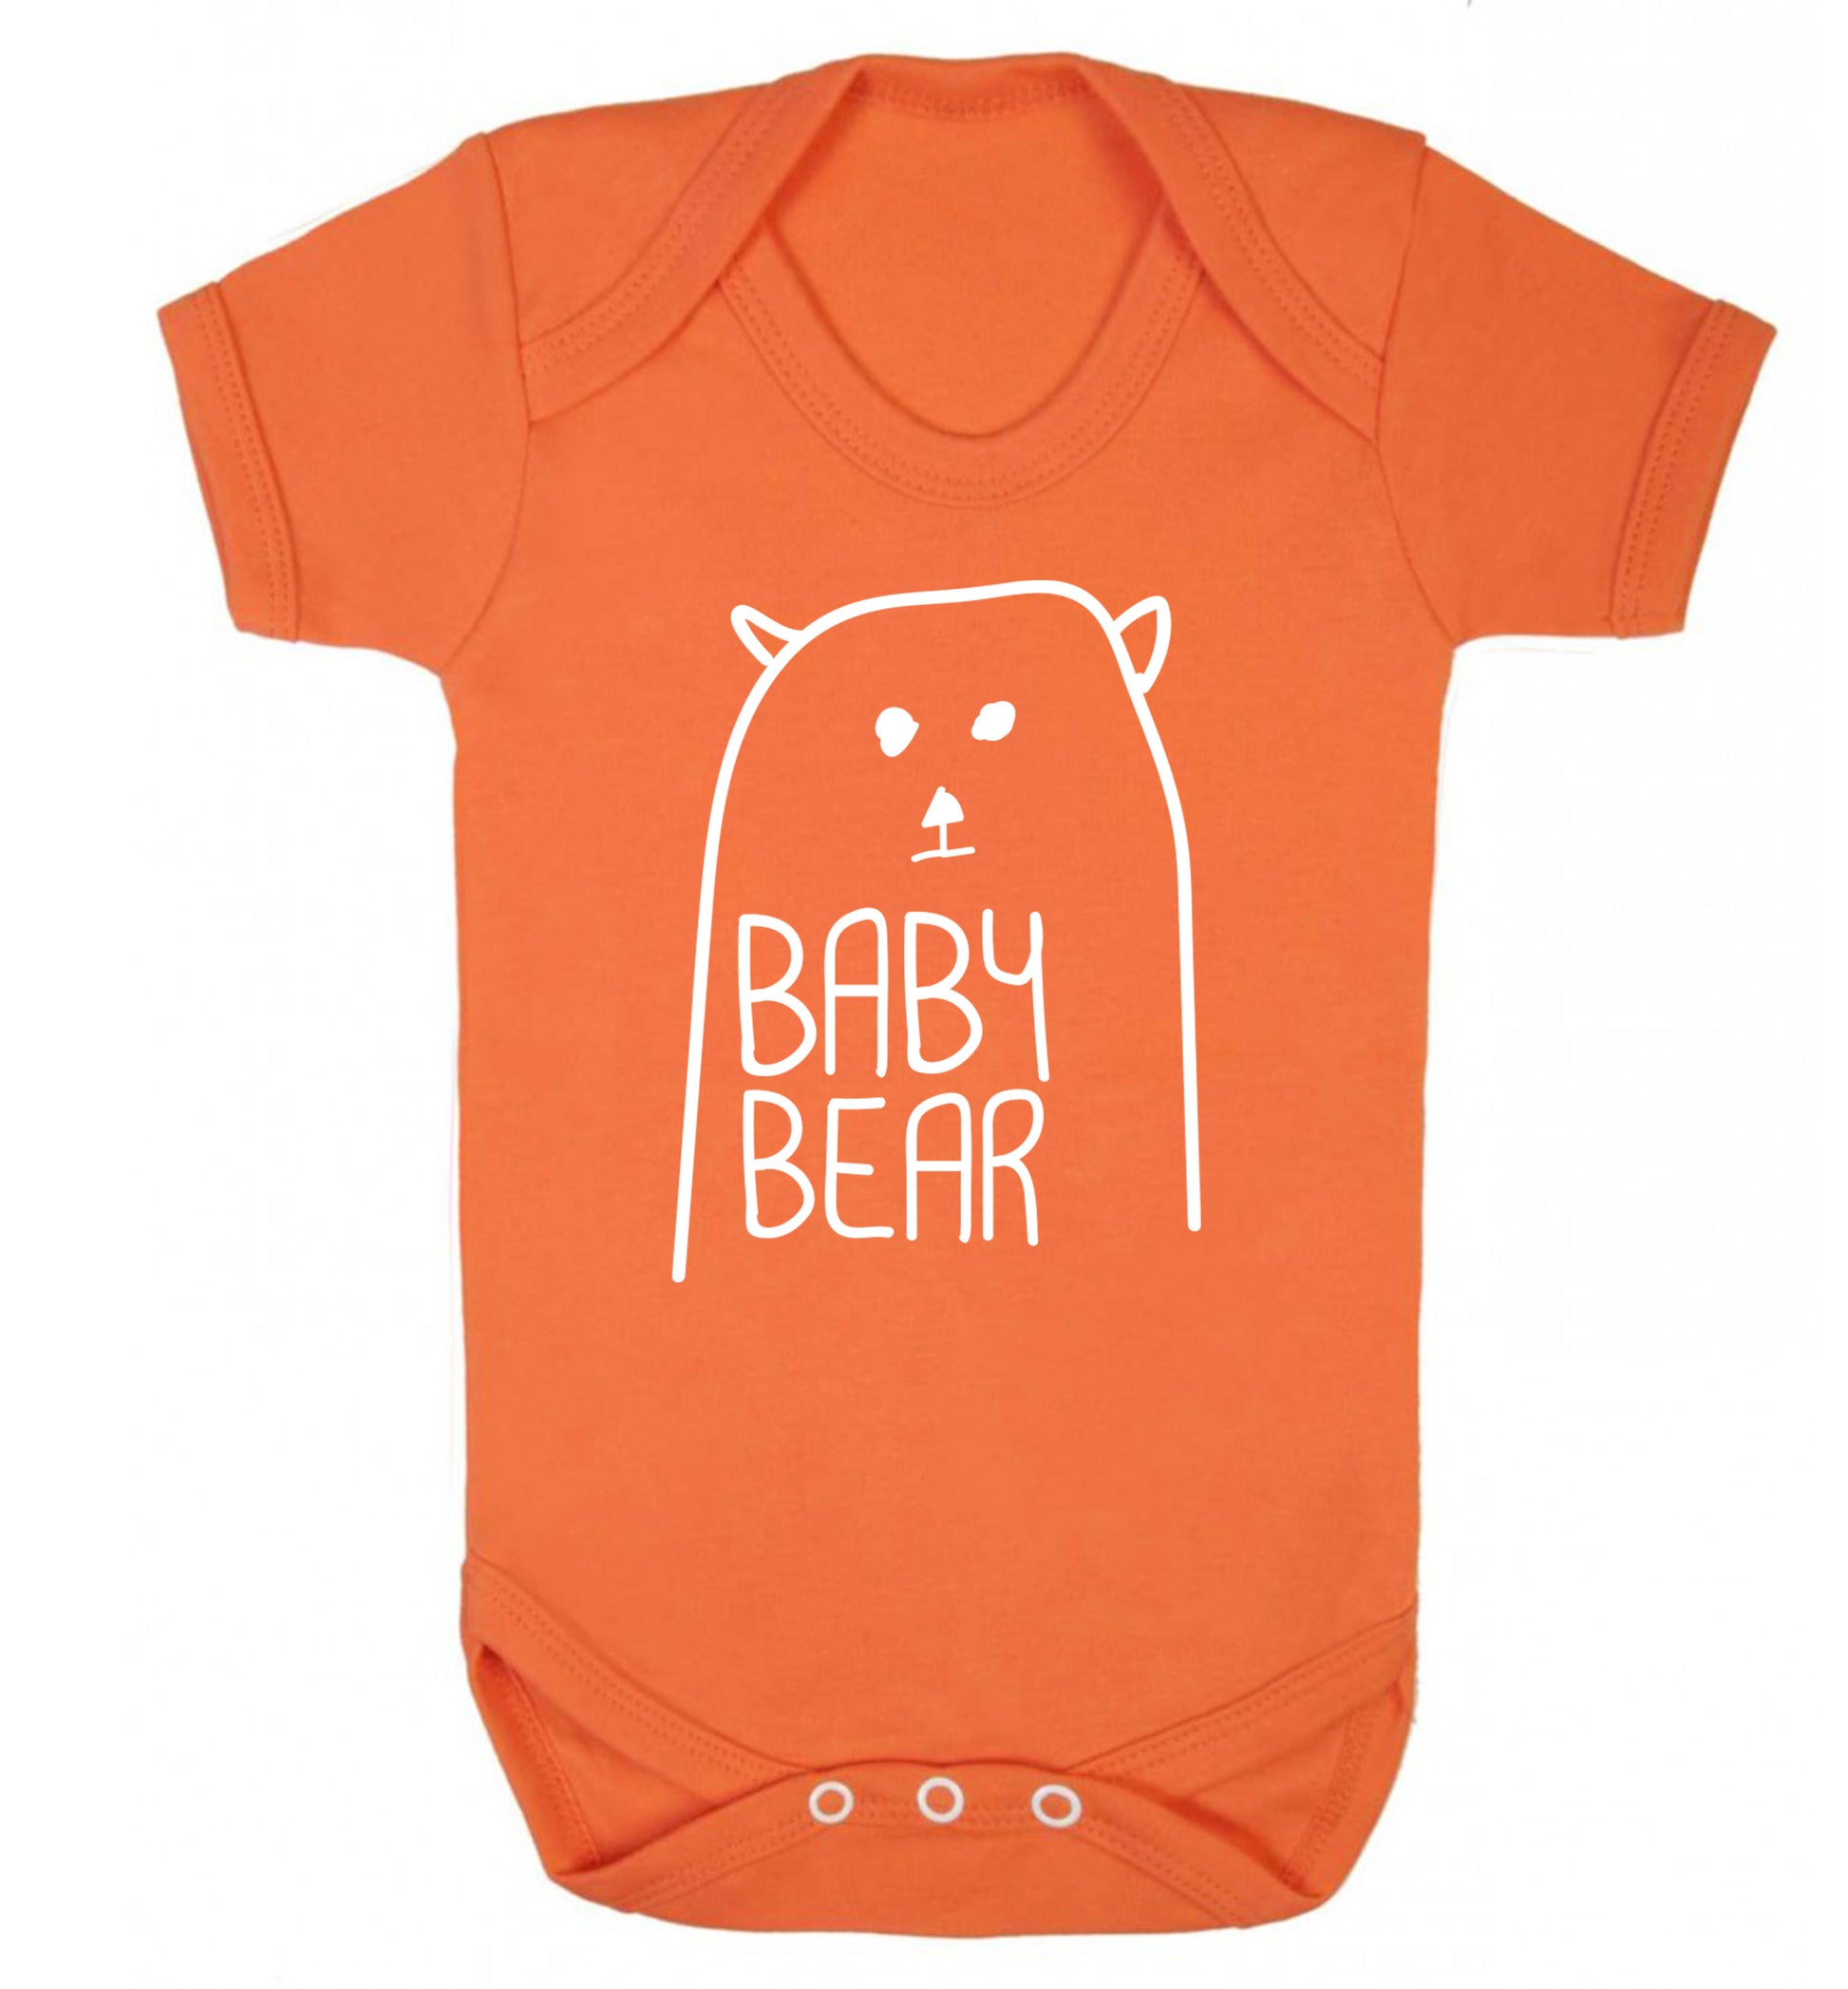 Baby bear Baby Vest orange 18-24 months